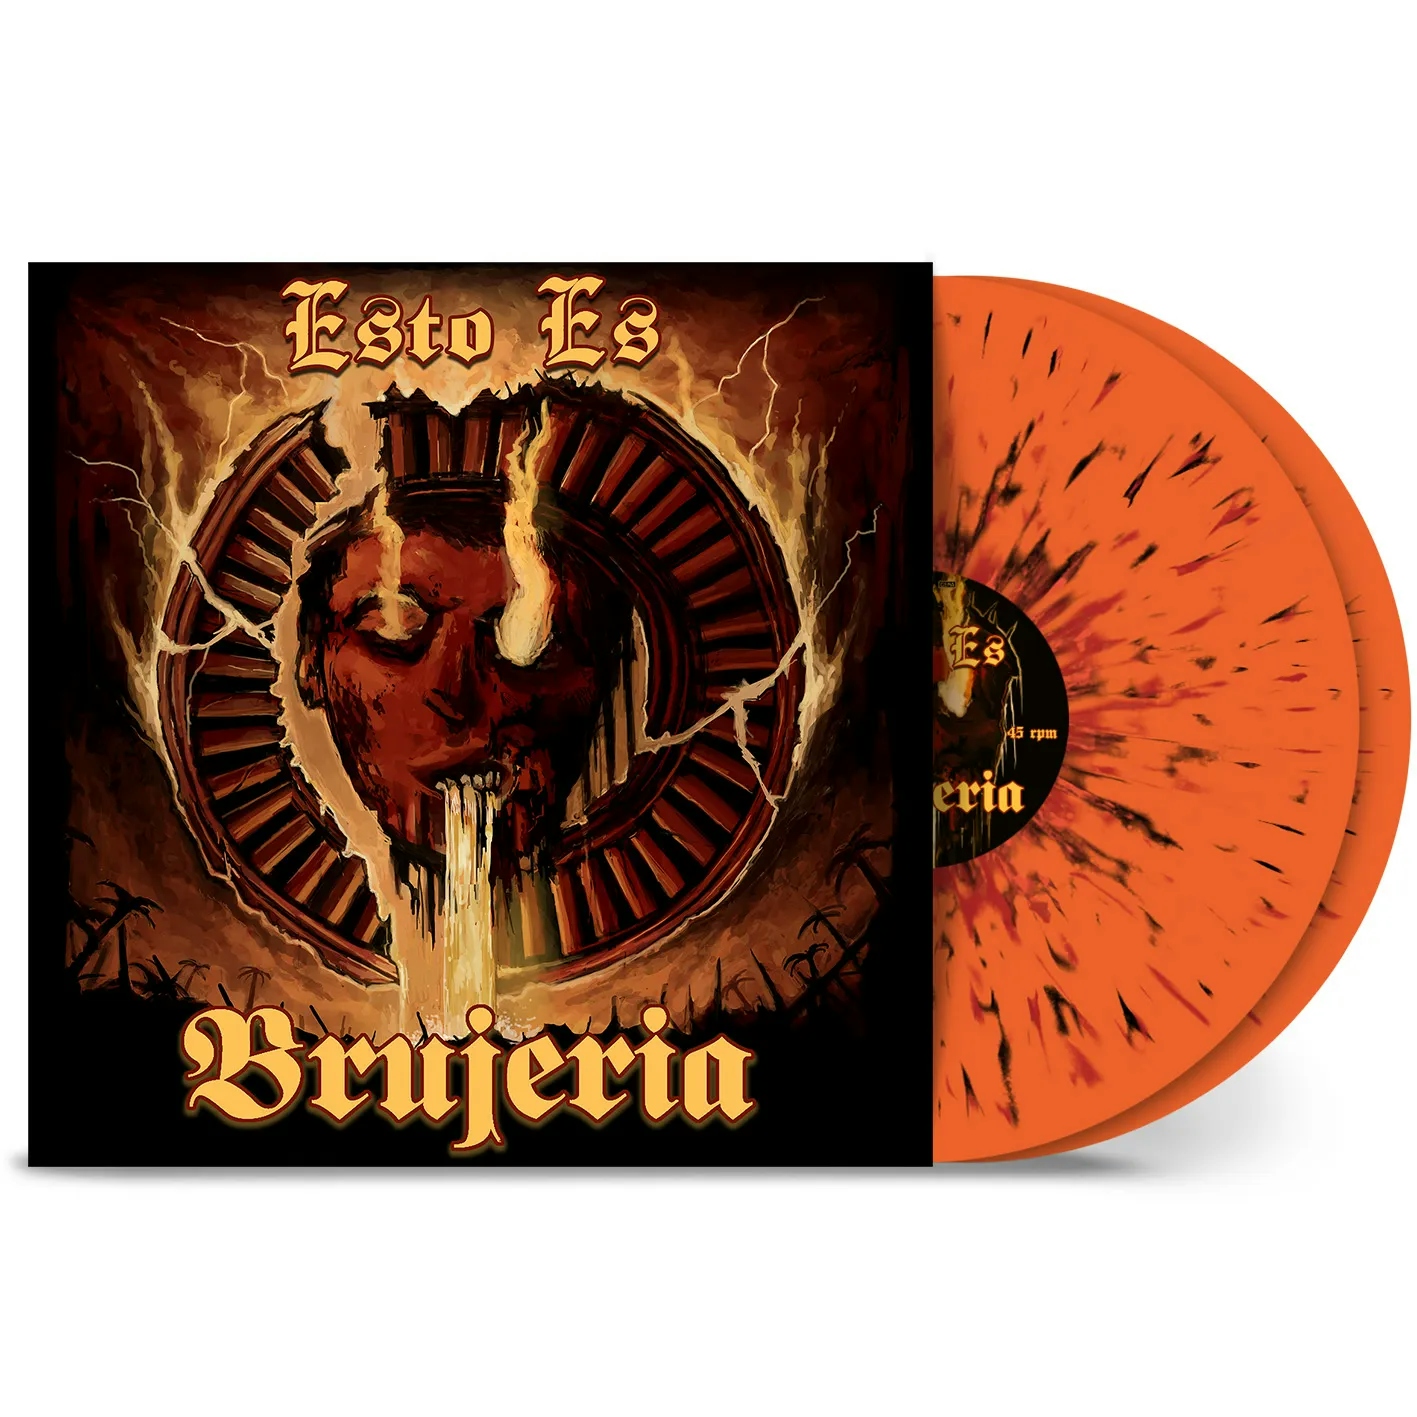 Album artwork for Album artwork for Esto Es Brujera by Brujera by Esto Es Brujera - Brujera